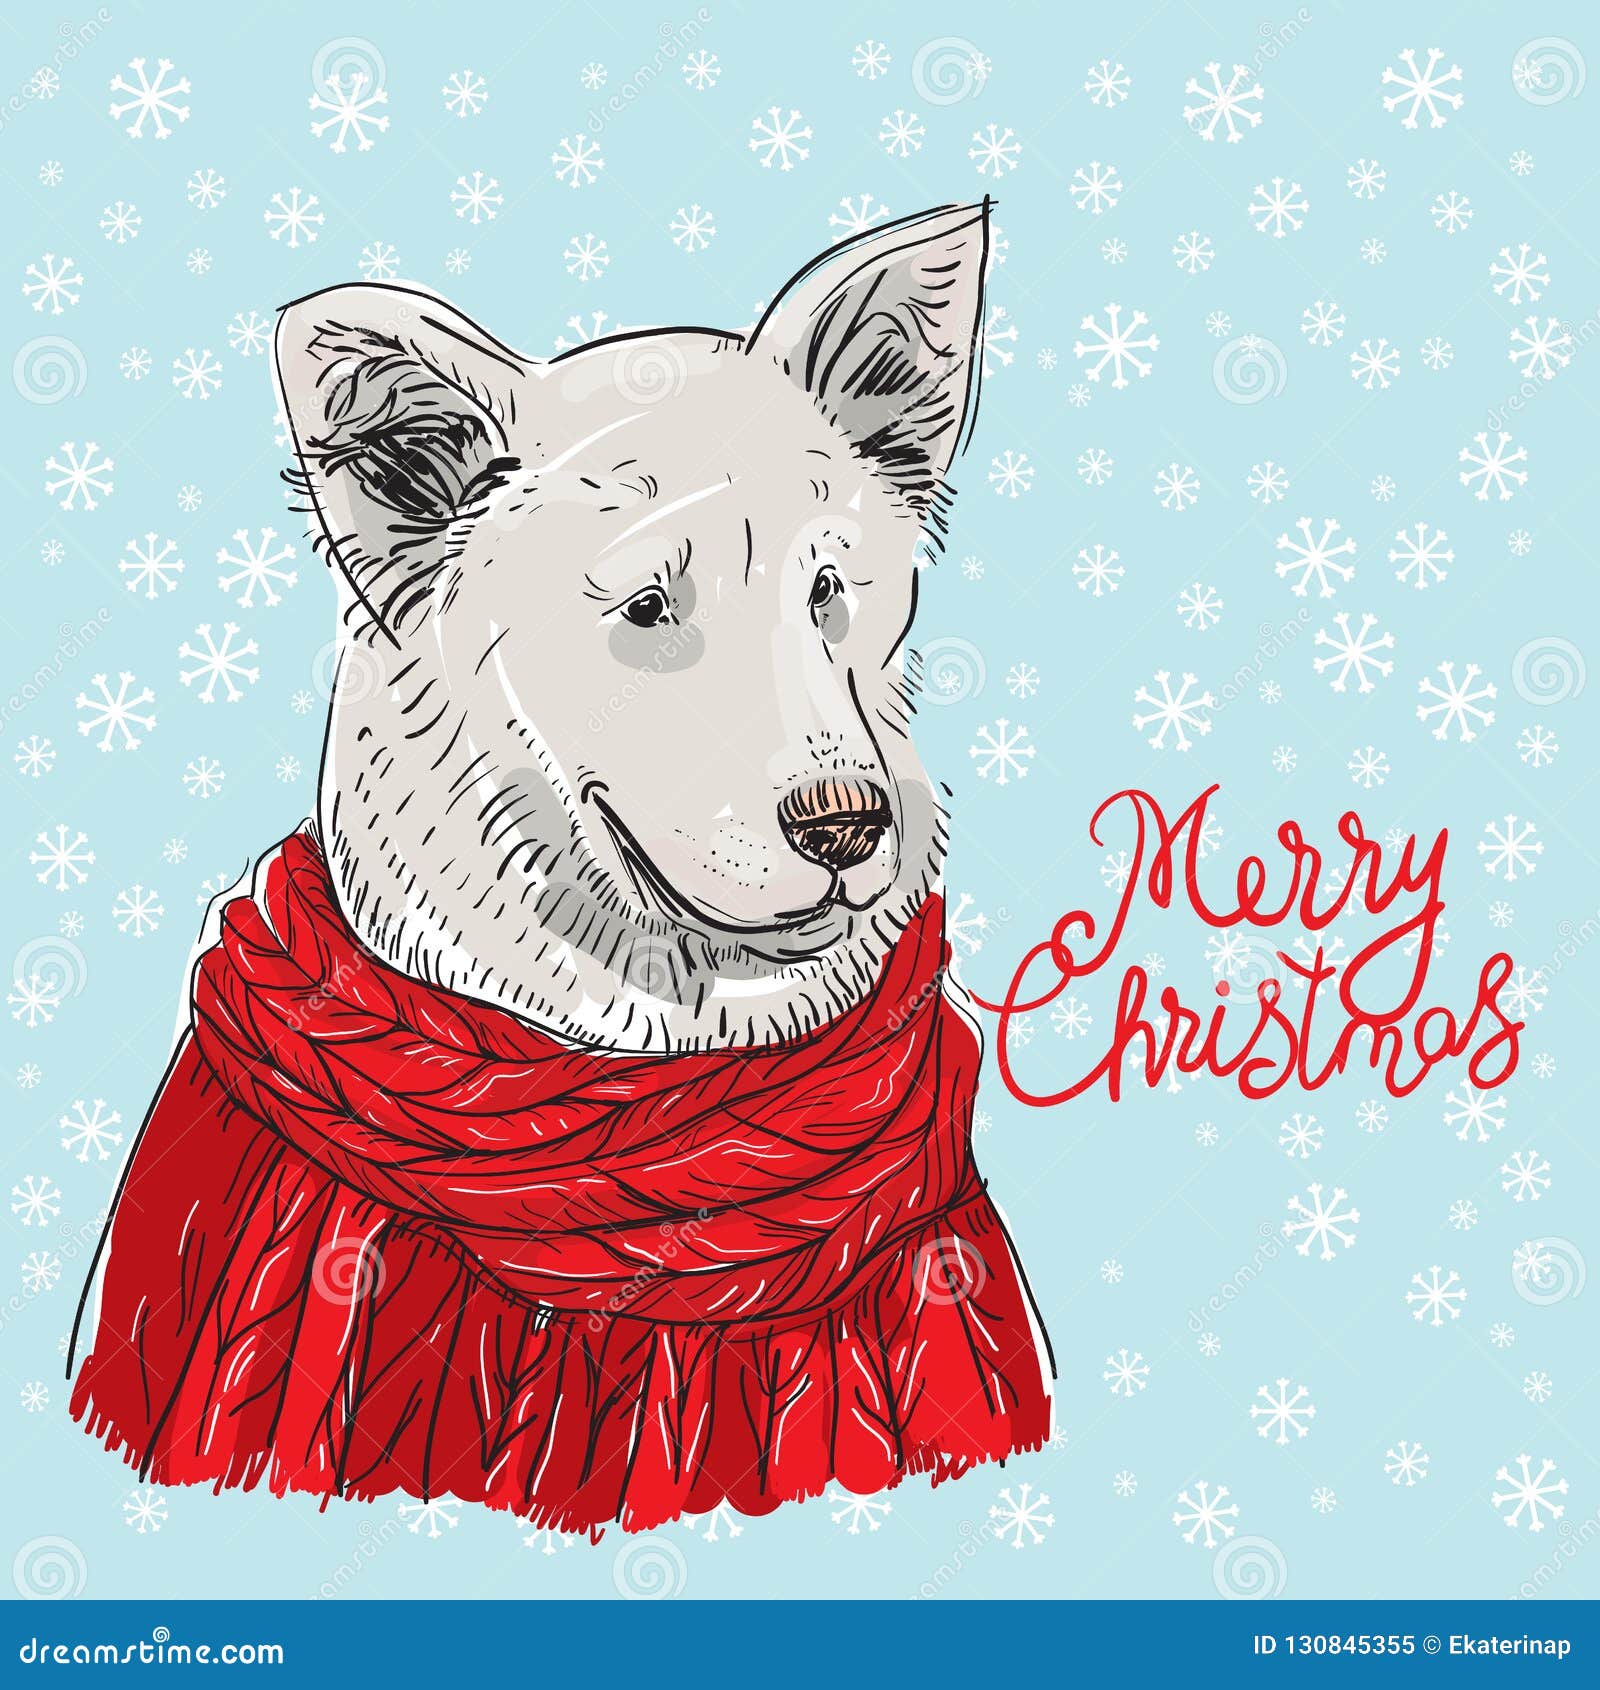 Buon Natale Un Ca.Cane Bianco Di Progettazione Di Carta Del Nuovo Anno Di Buon Natale In Un Maglione Tricottato Rosso Di Natale Shepherd Disegno Di Illustrazione Vettoriale Illustrazione Di Testa Scheda 130845355